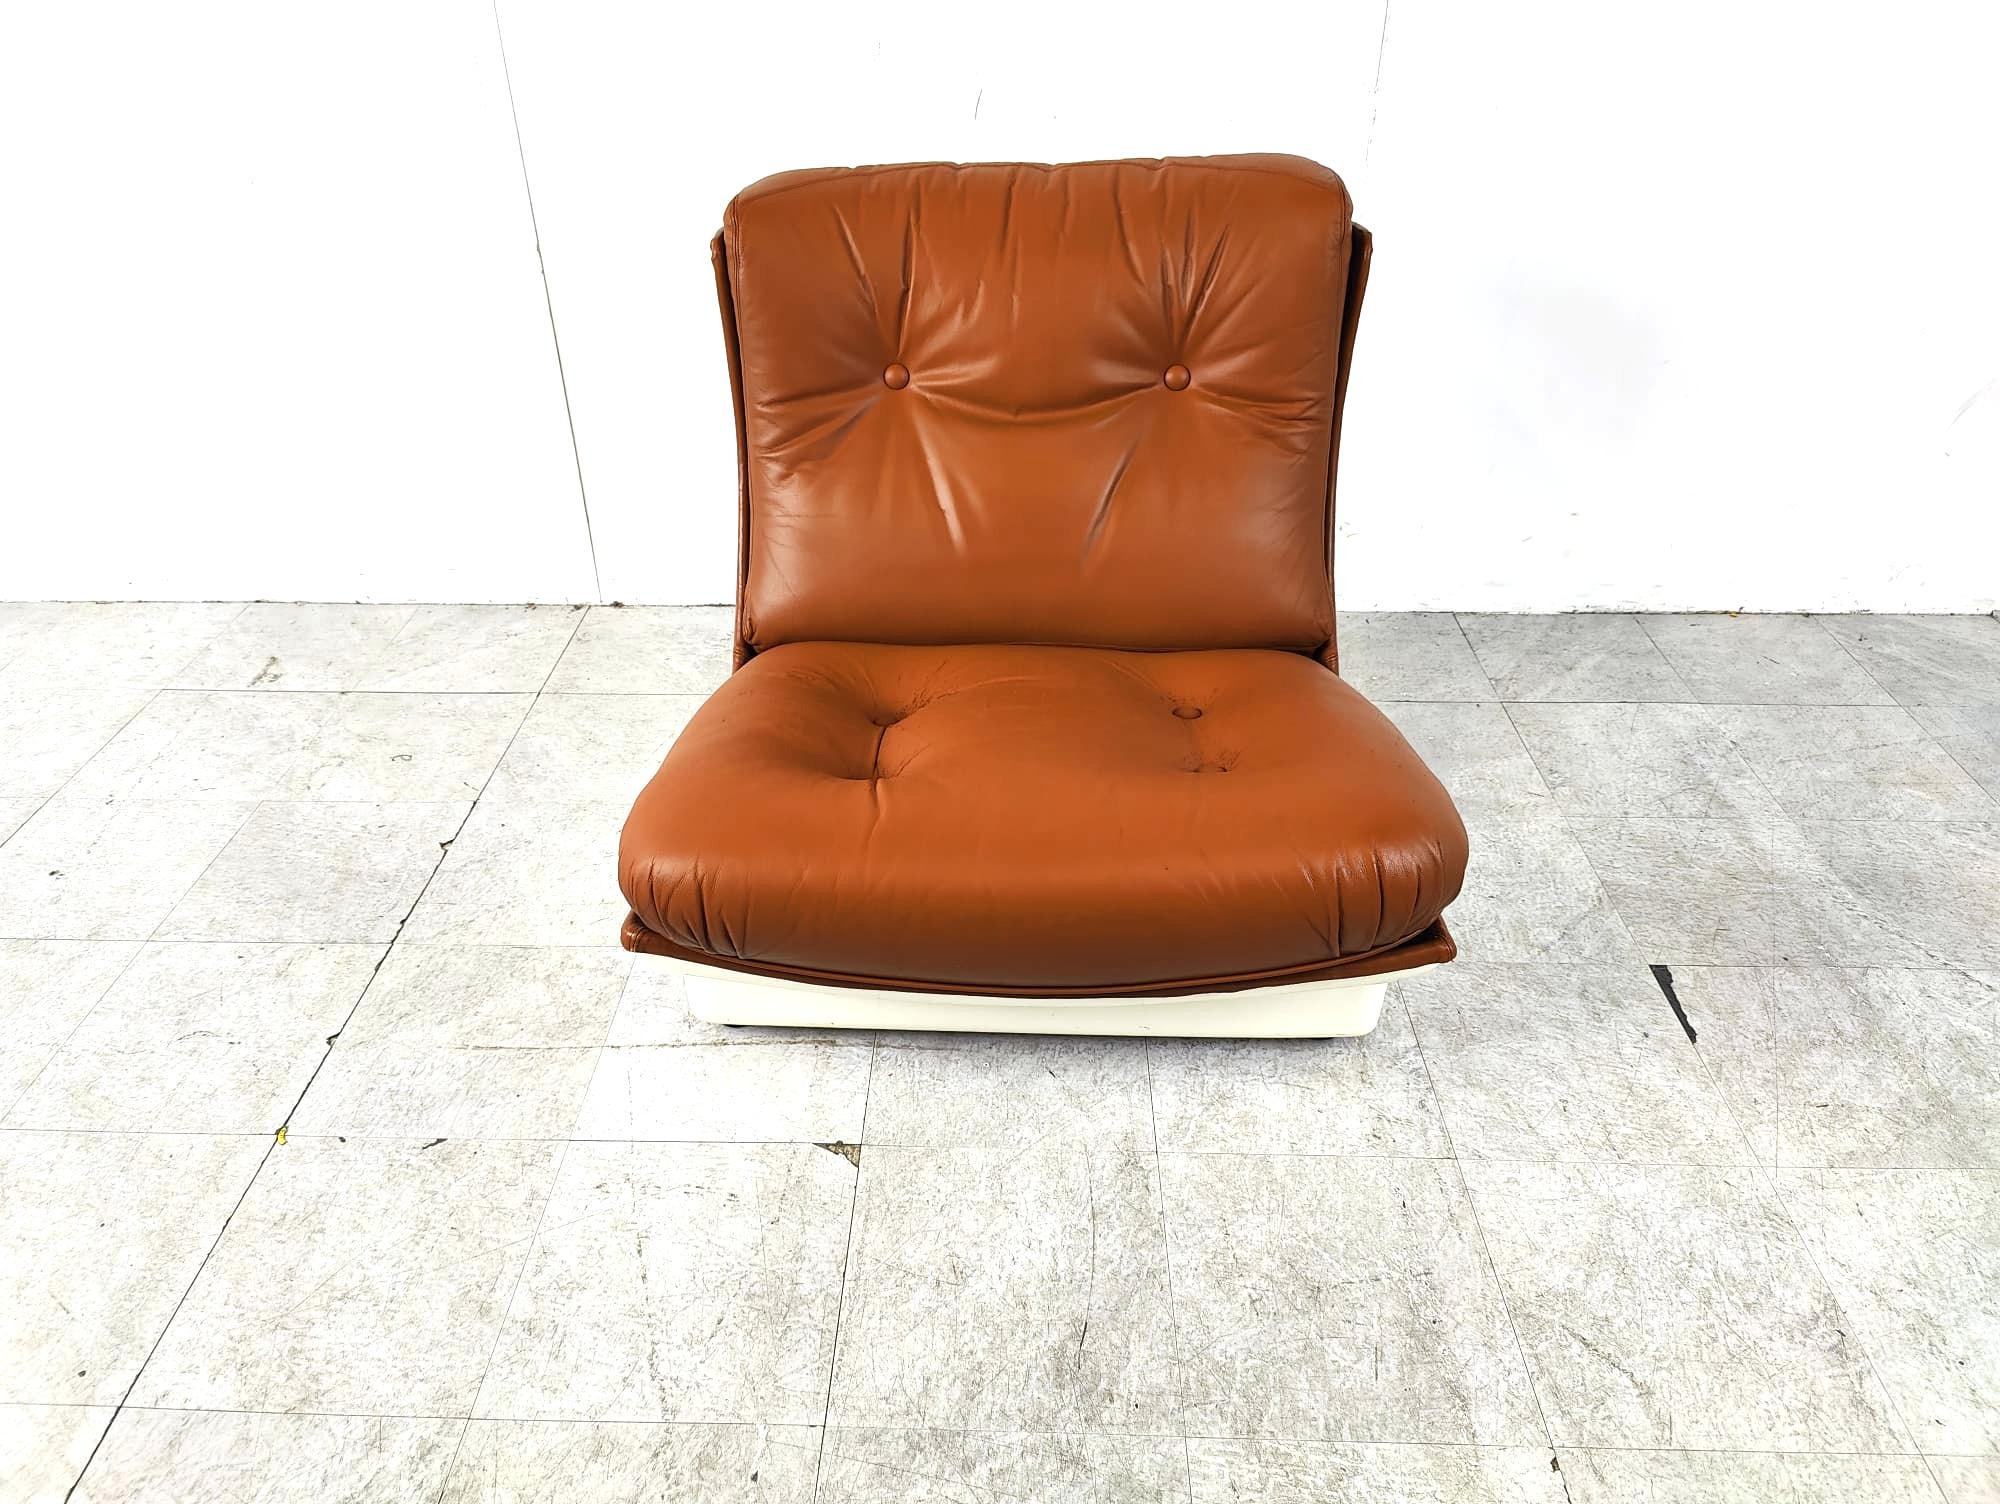 Auffälliger Space Age Lounge Chair von Airborne international.

Der Stuhl besteht aus einer weißen Fiberglasschale, die mit braunem, gepolstertem Leder bezogen ist.

Er sitzt so bequem, wie er aussieht.

Guter Zustand, Originalpolsterung mit Patina,